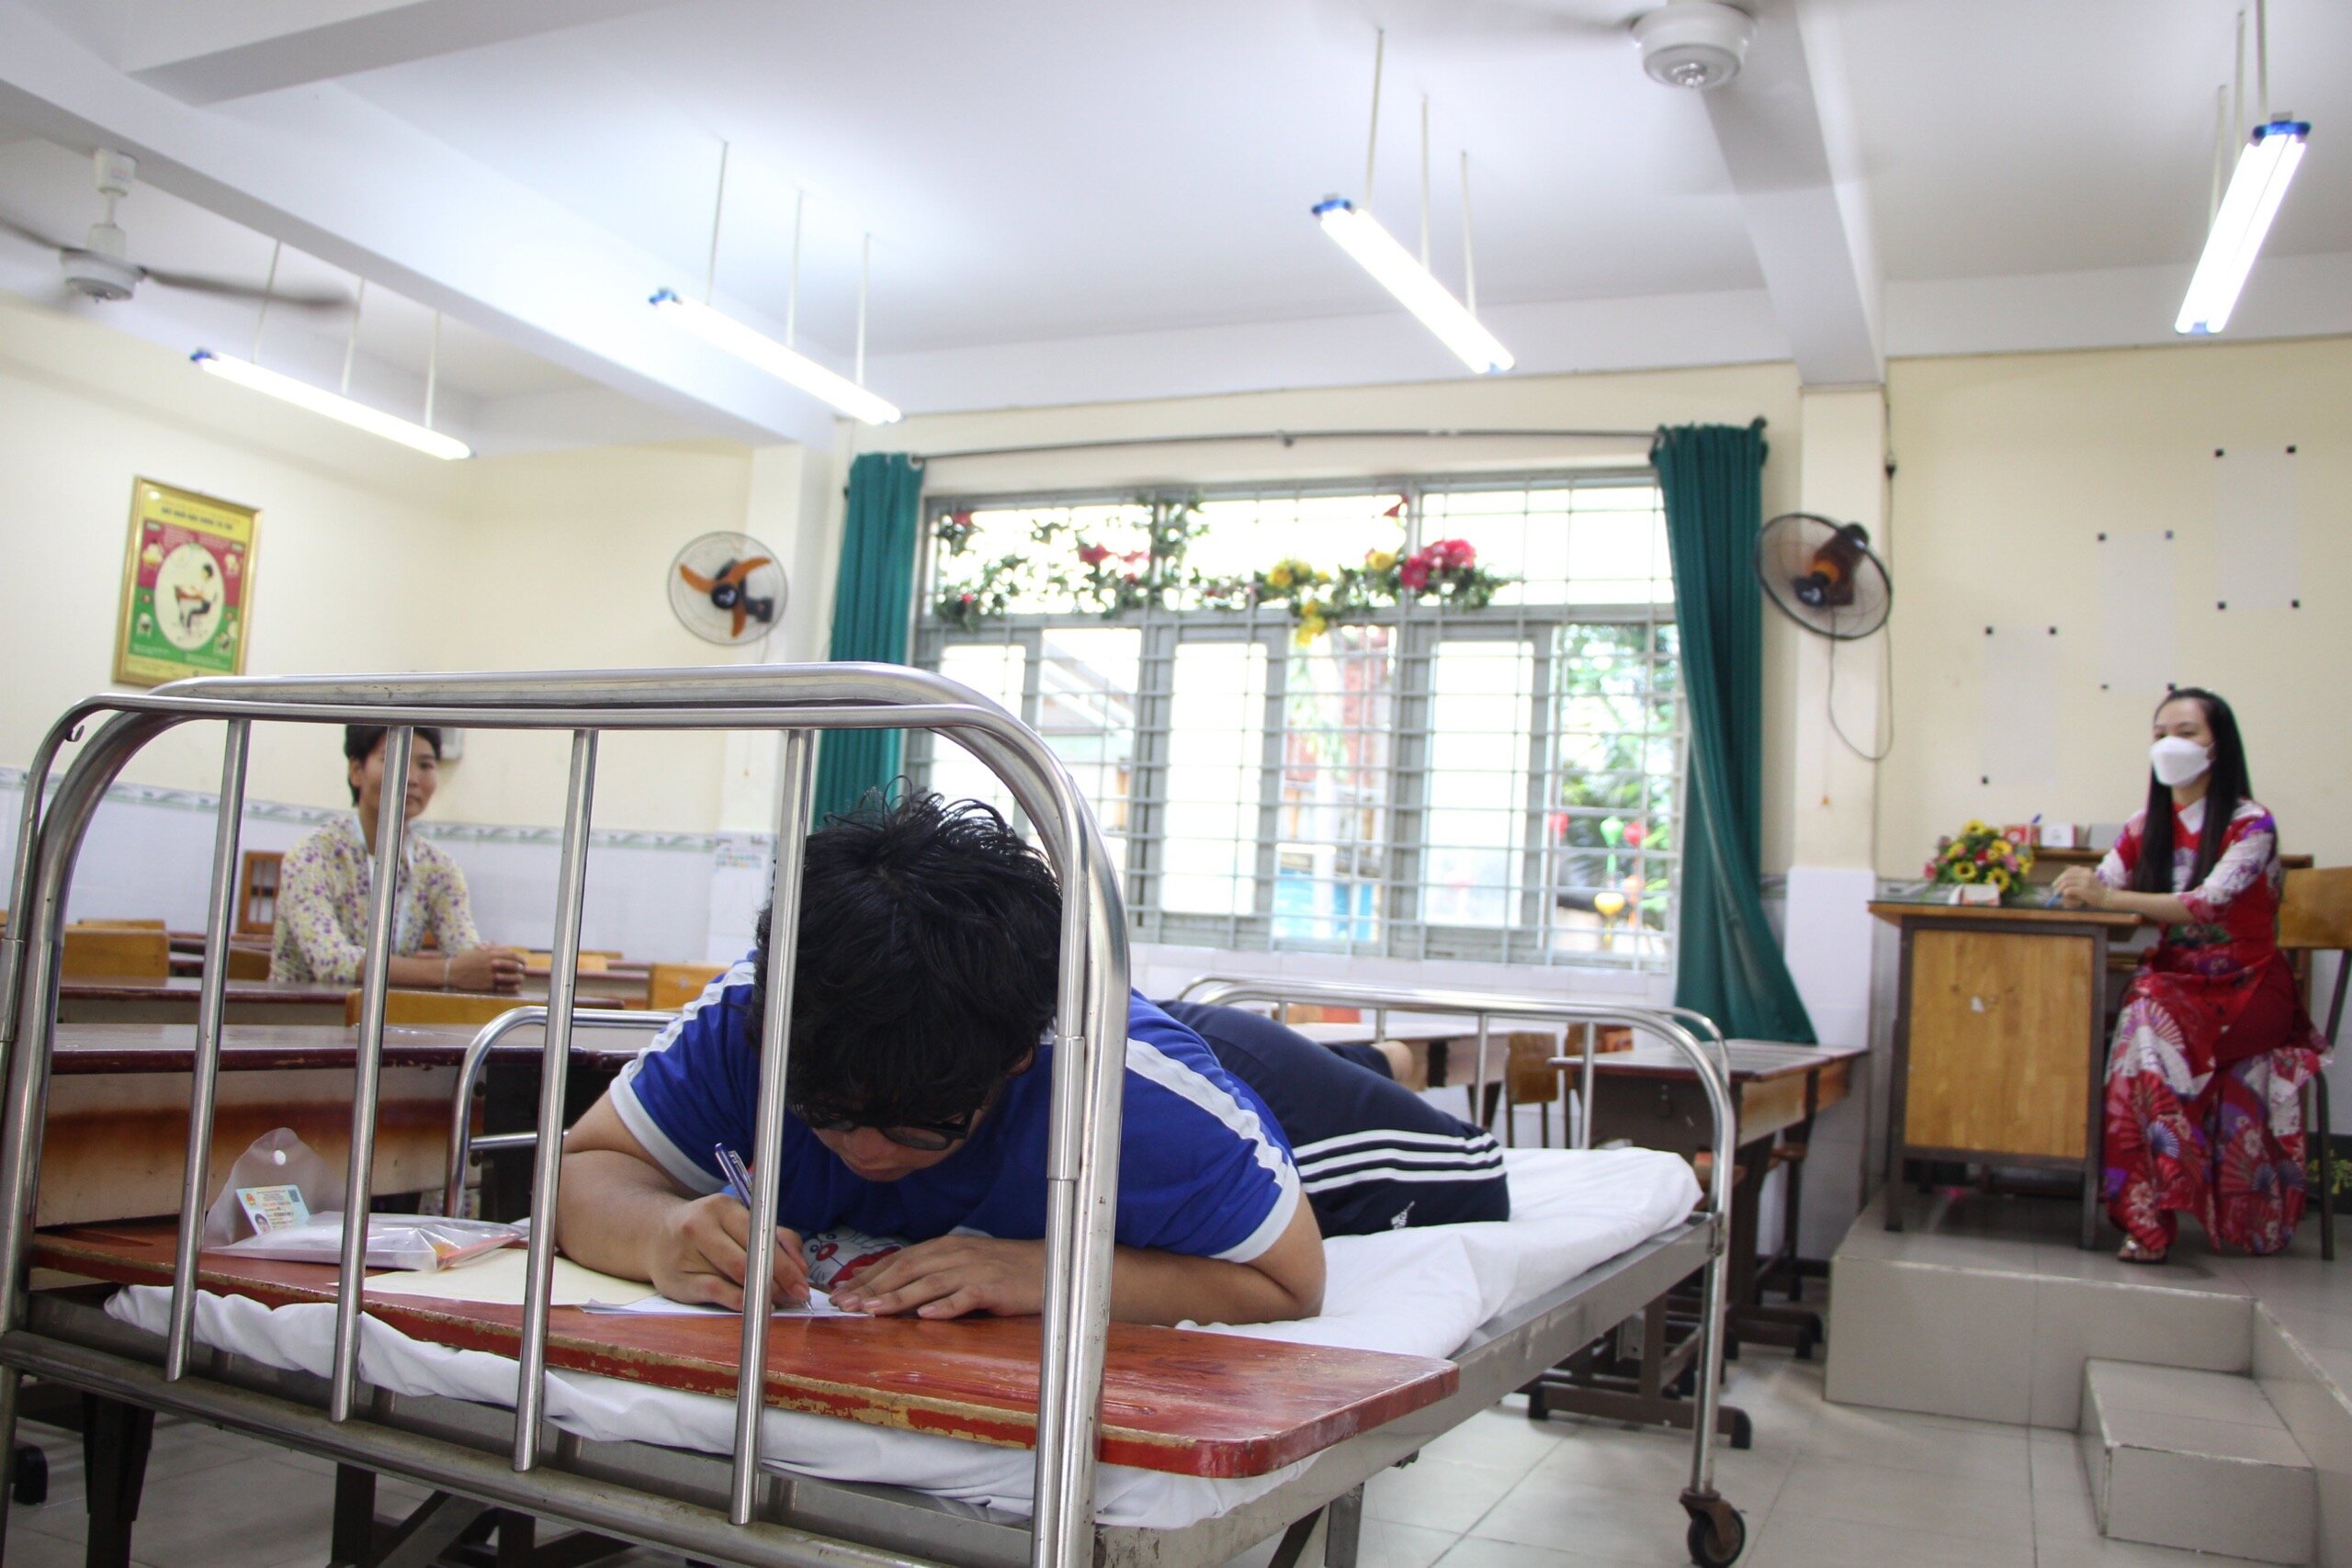 Thí sinh Nguyễn Minh Thiên Phong được đặc cách nằm riêng một phòng làm bài thi. (Ảnh: Nguyễn Hoa)